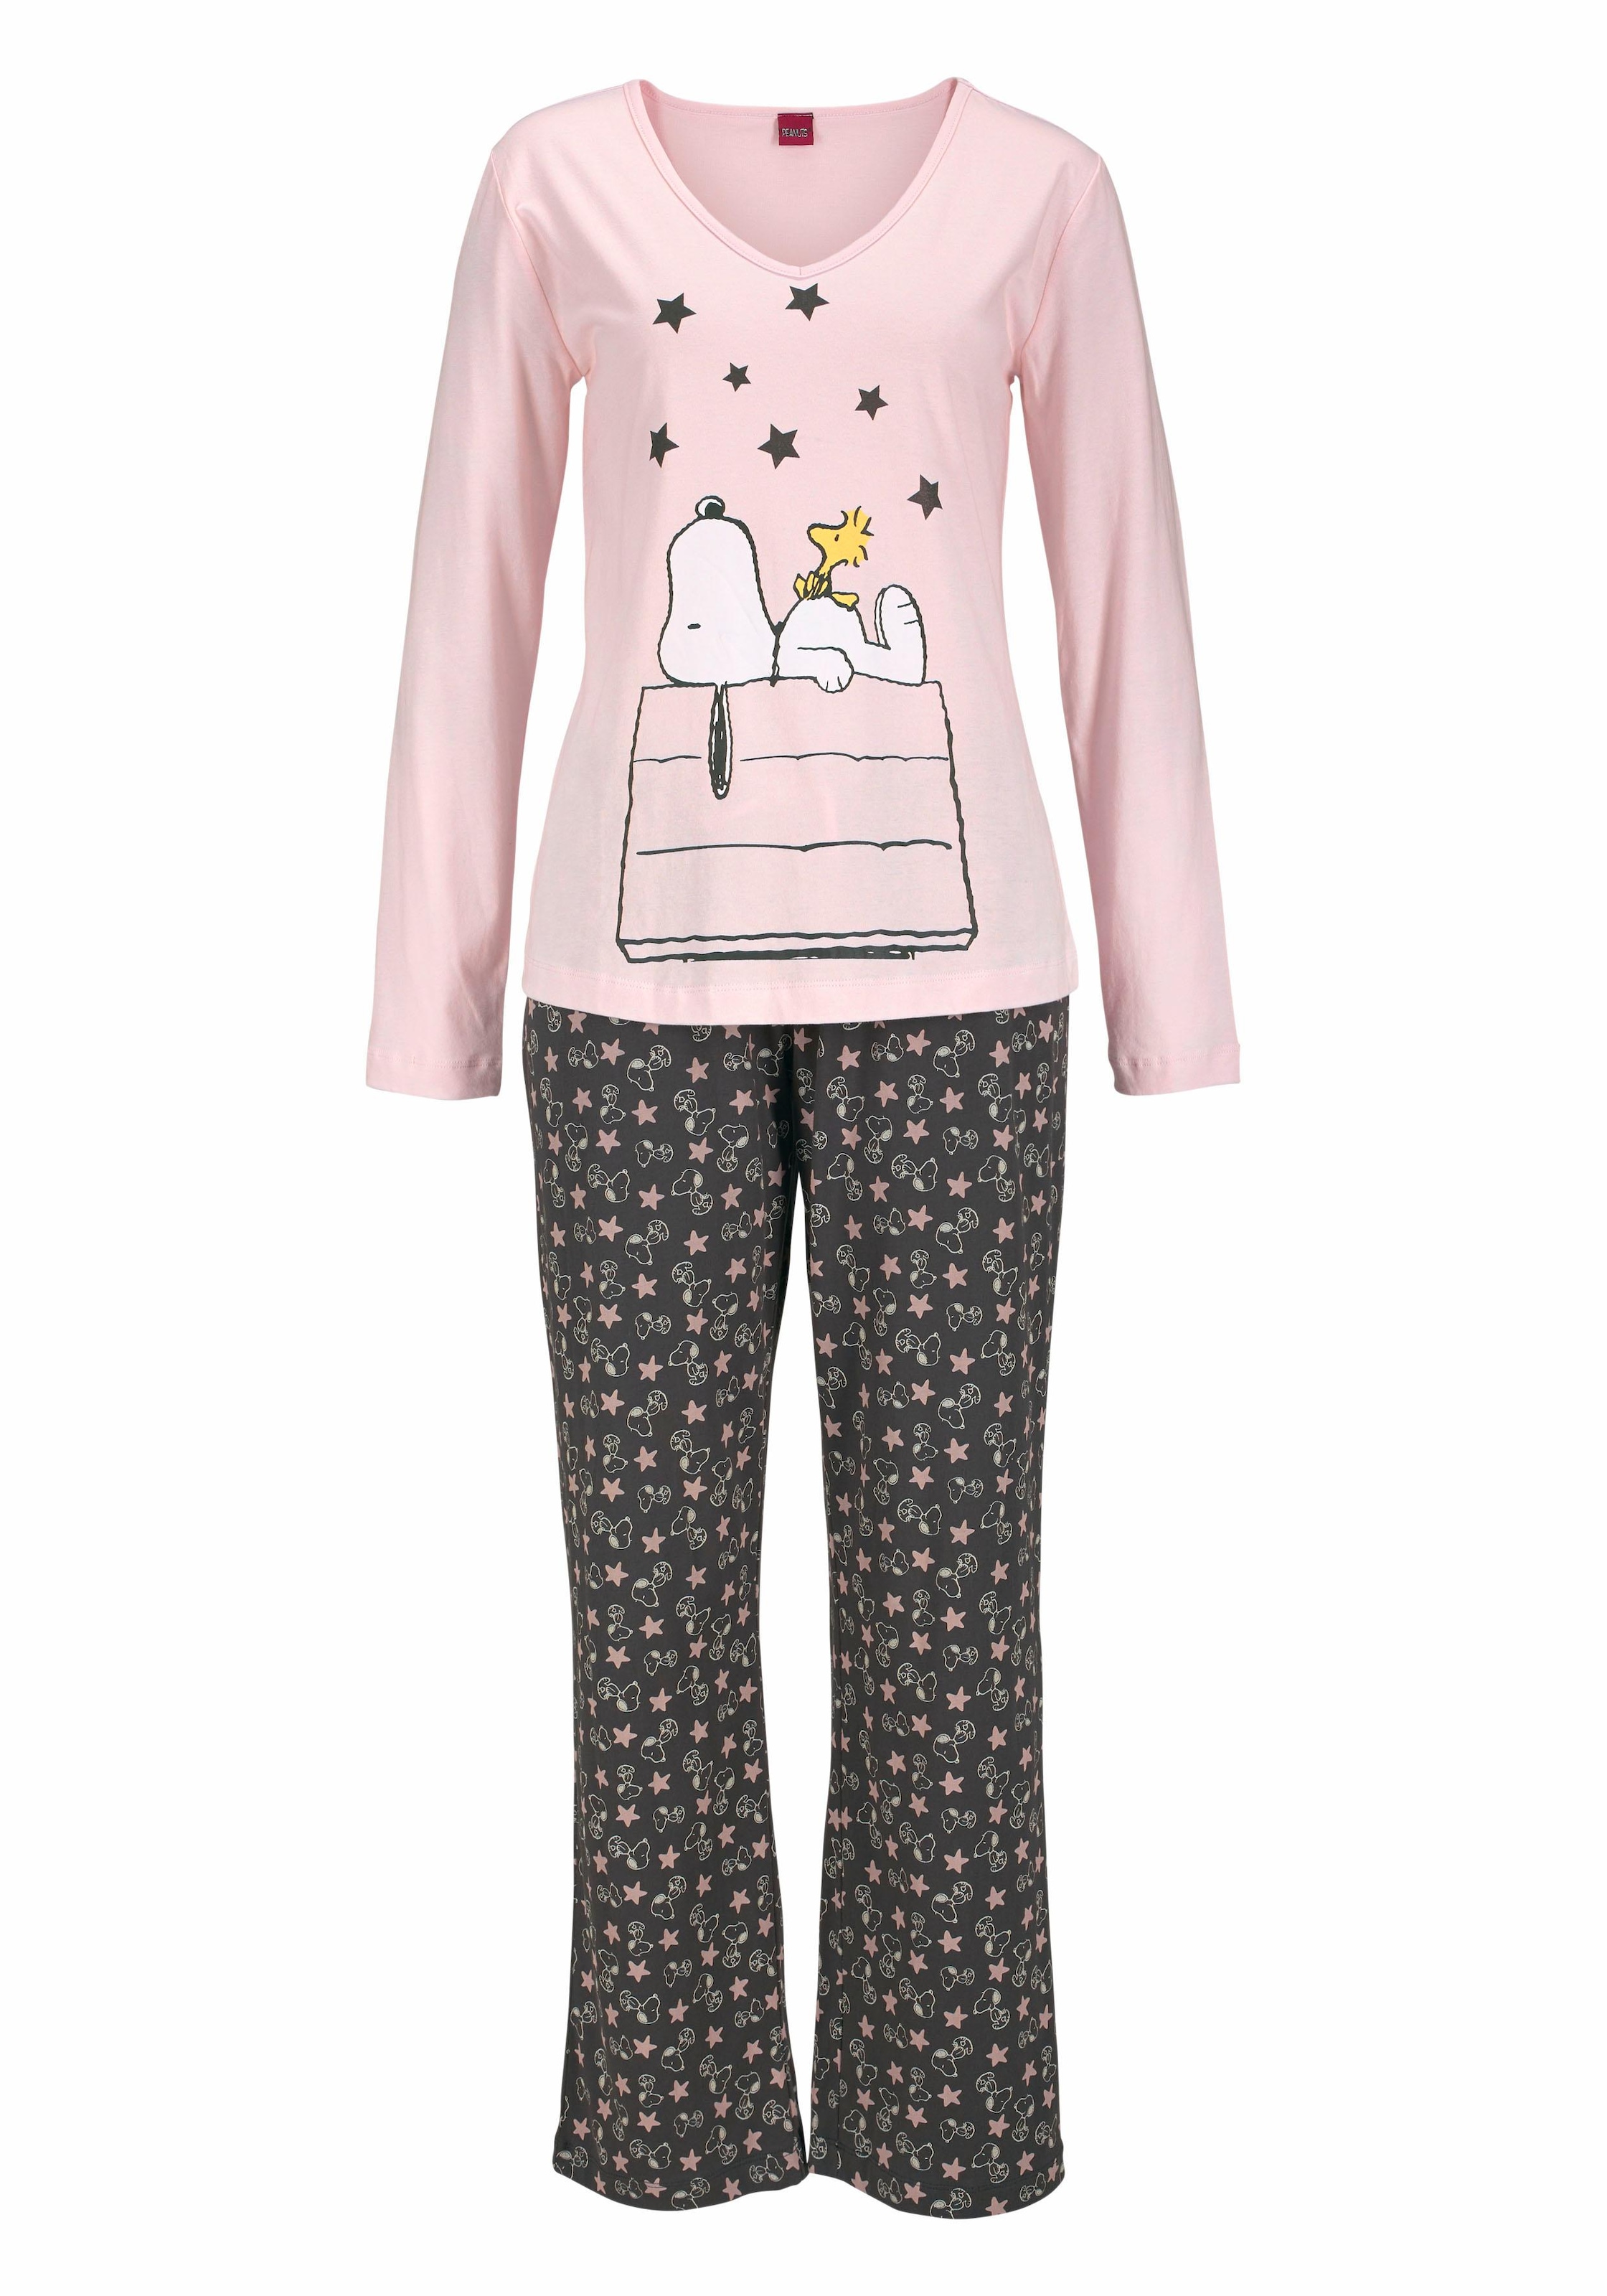 Peanuts Pyjama, (2 tlg., 1 Stück), in langer Form im niedlichen Snoopy-Design  bei OTTOversand